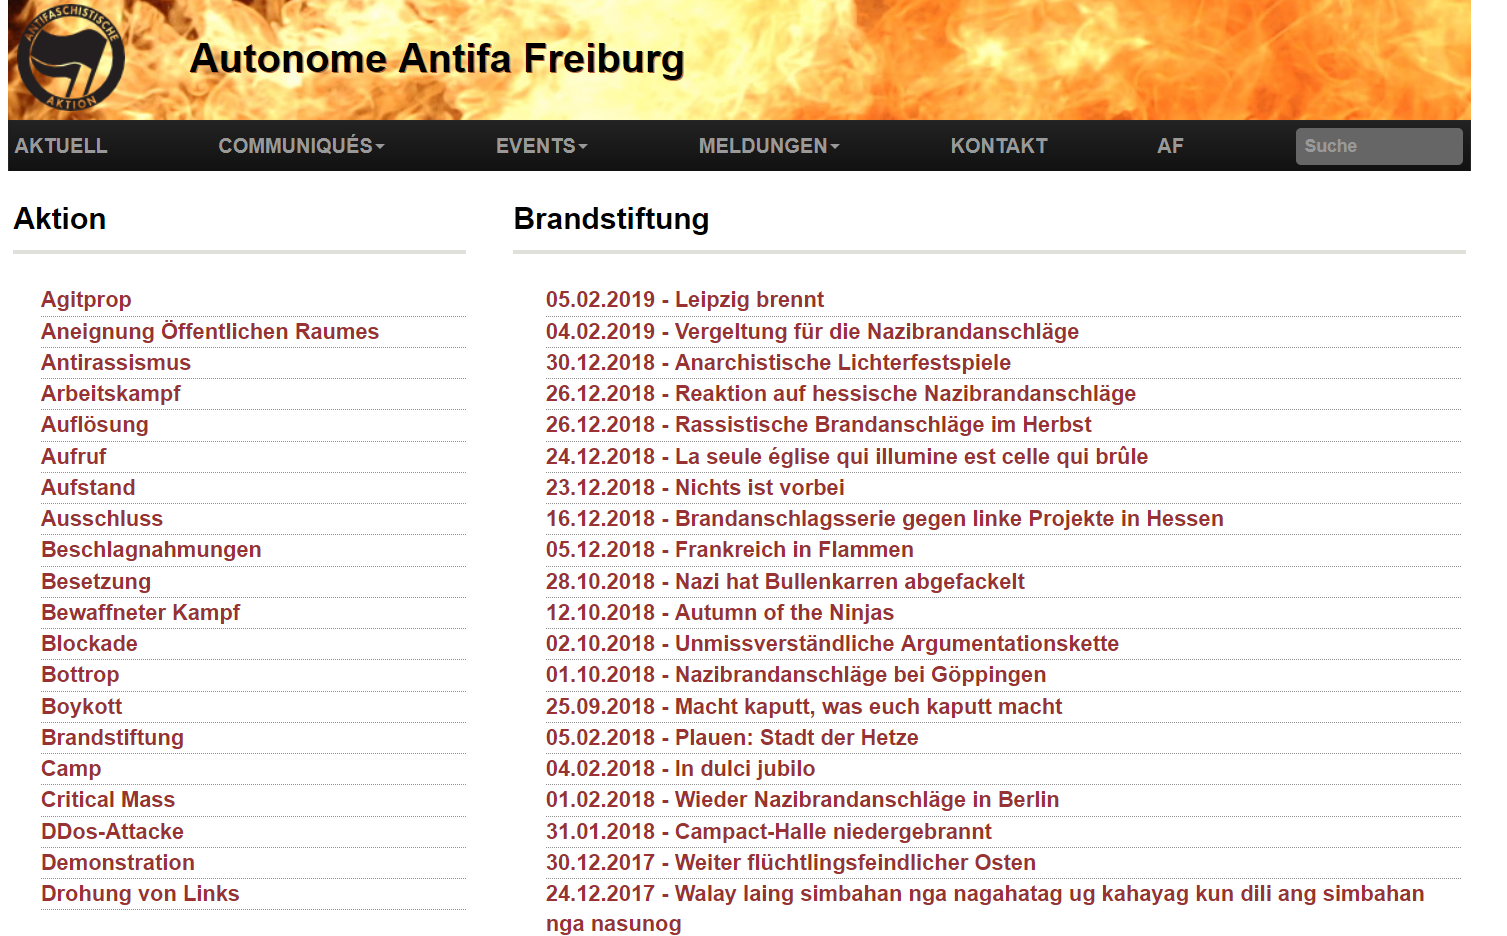 Antifa Freiburg